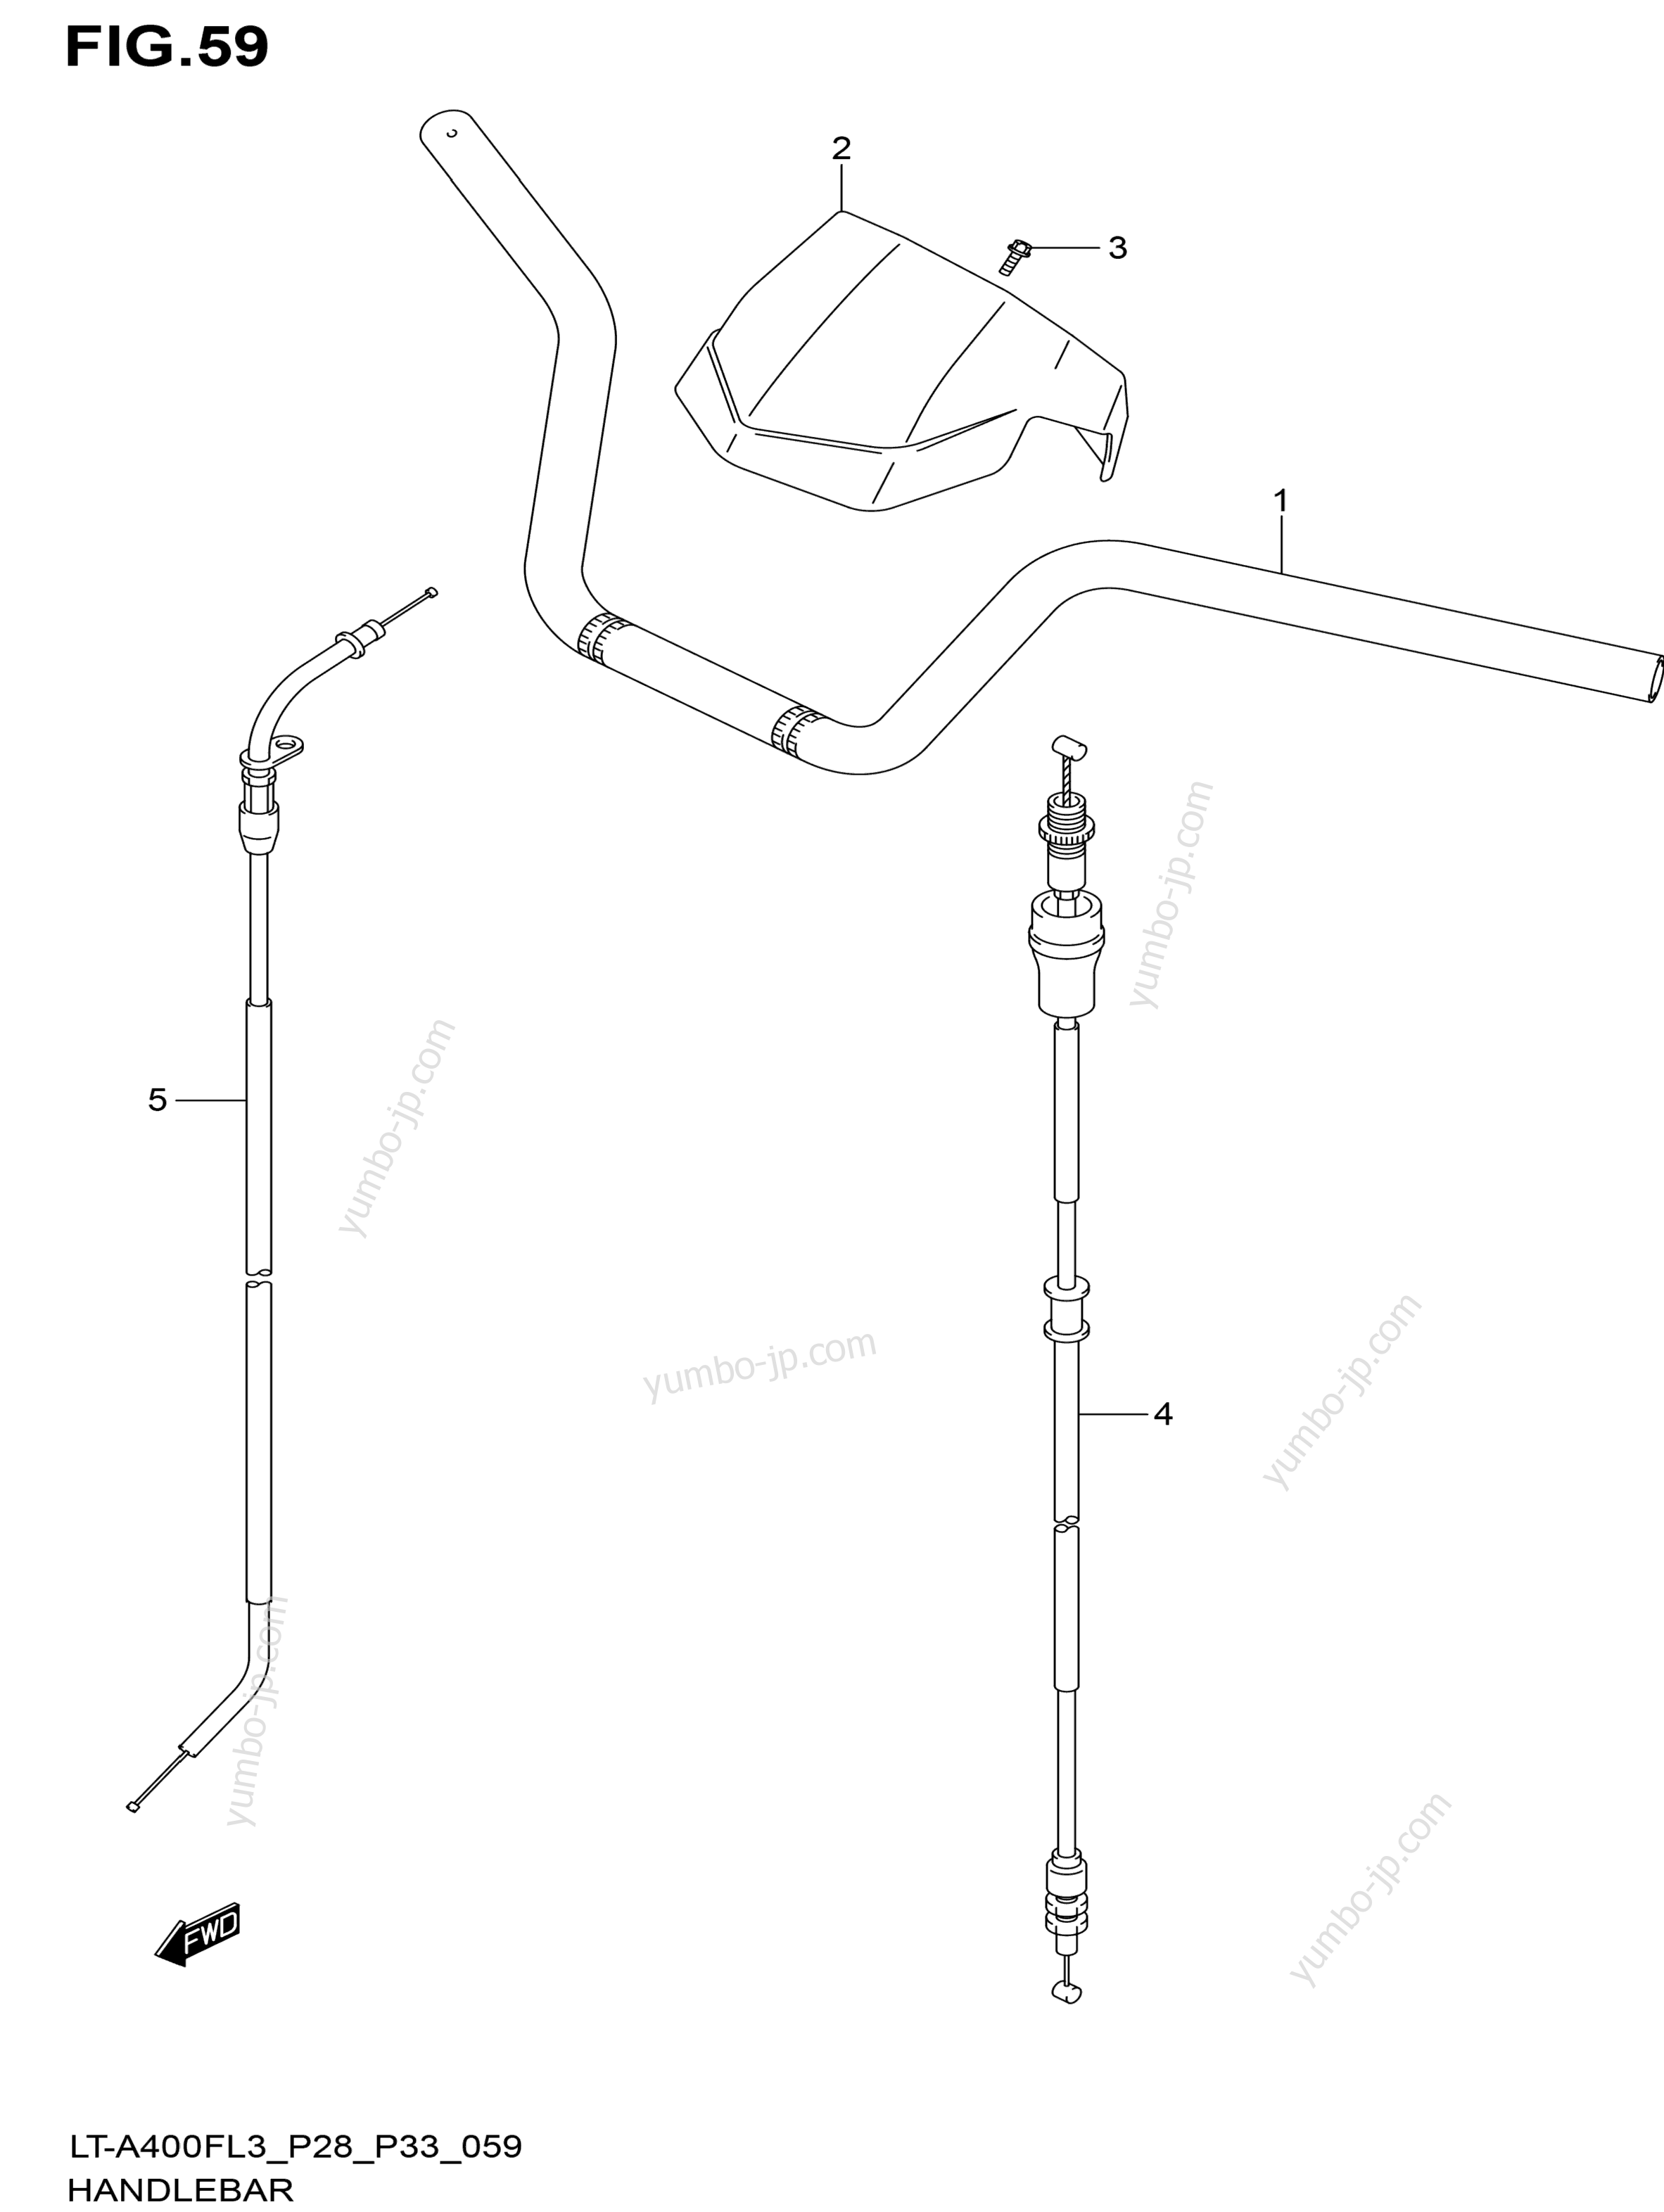 Румпель (рукоятка управления) для квадроциклов SUZUKI KingQuad (LT-A400FZ) 2013 г.